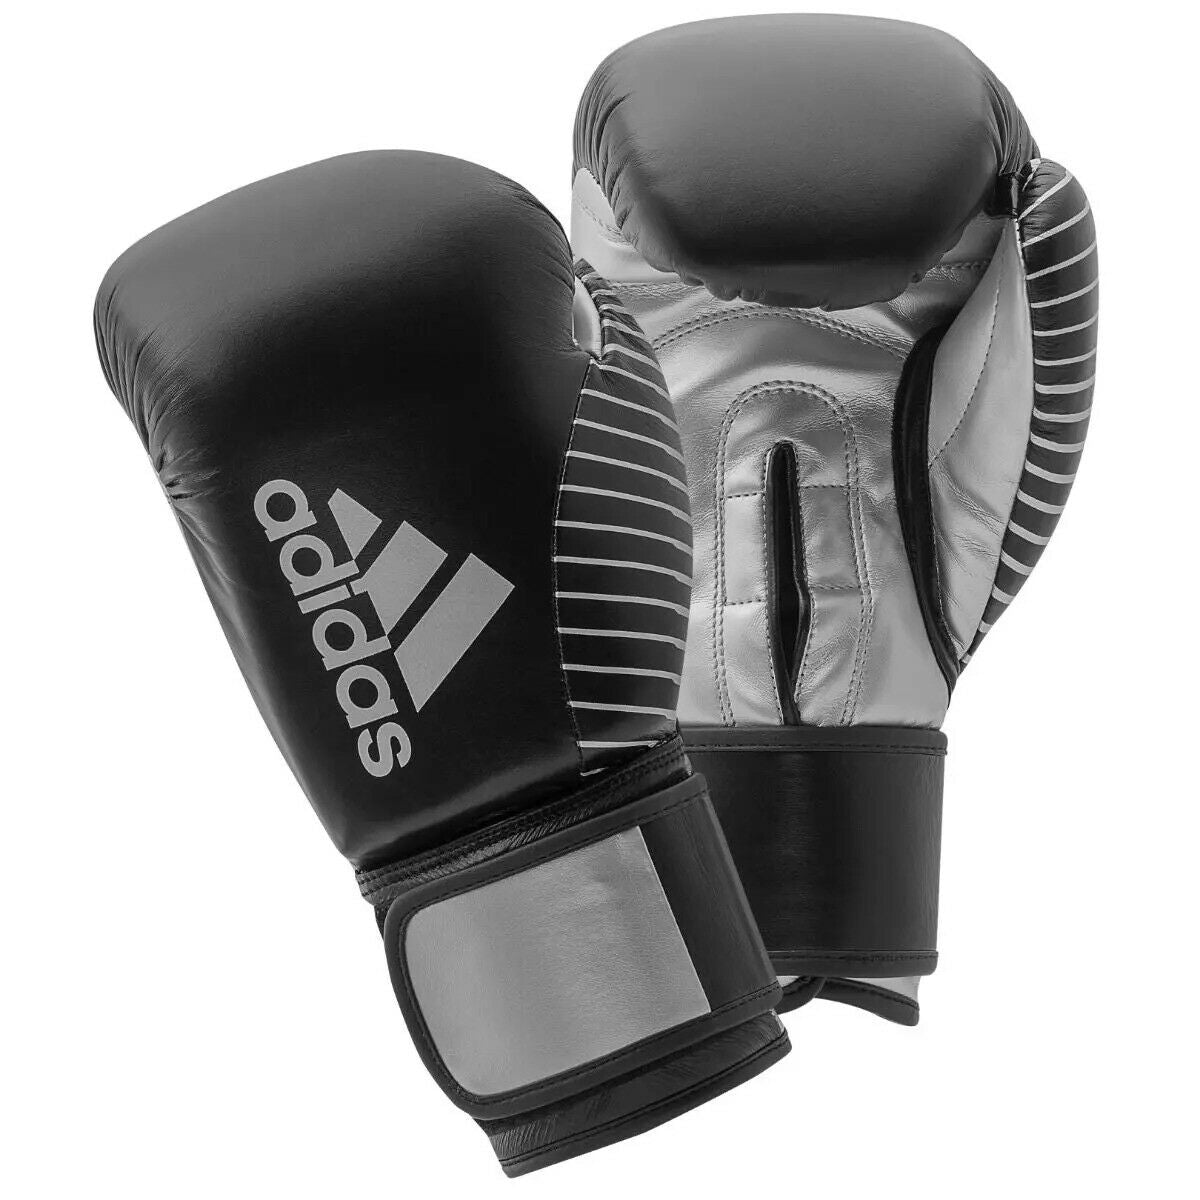 adidas Kickboxing Gloves Leather Boxing 10 oz - Budo Online